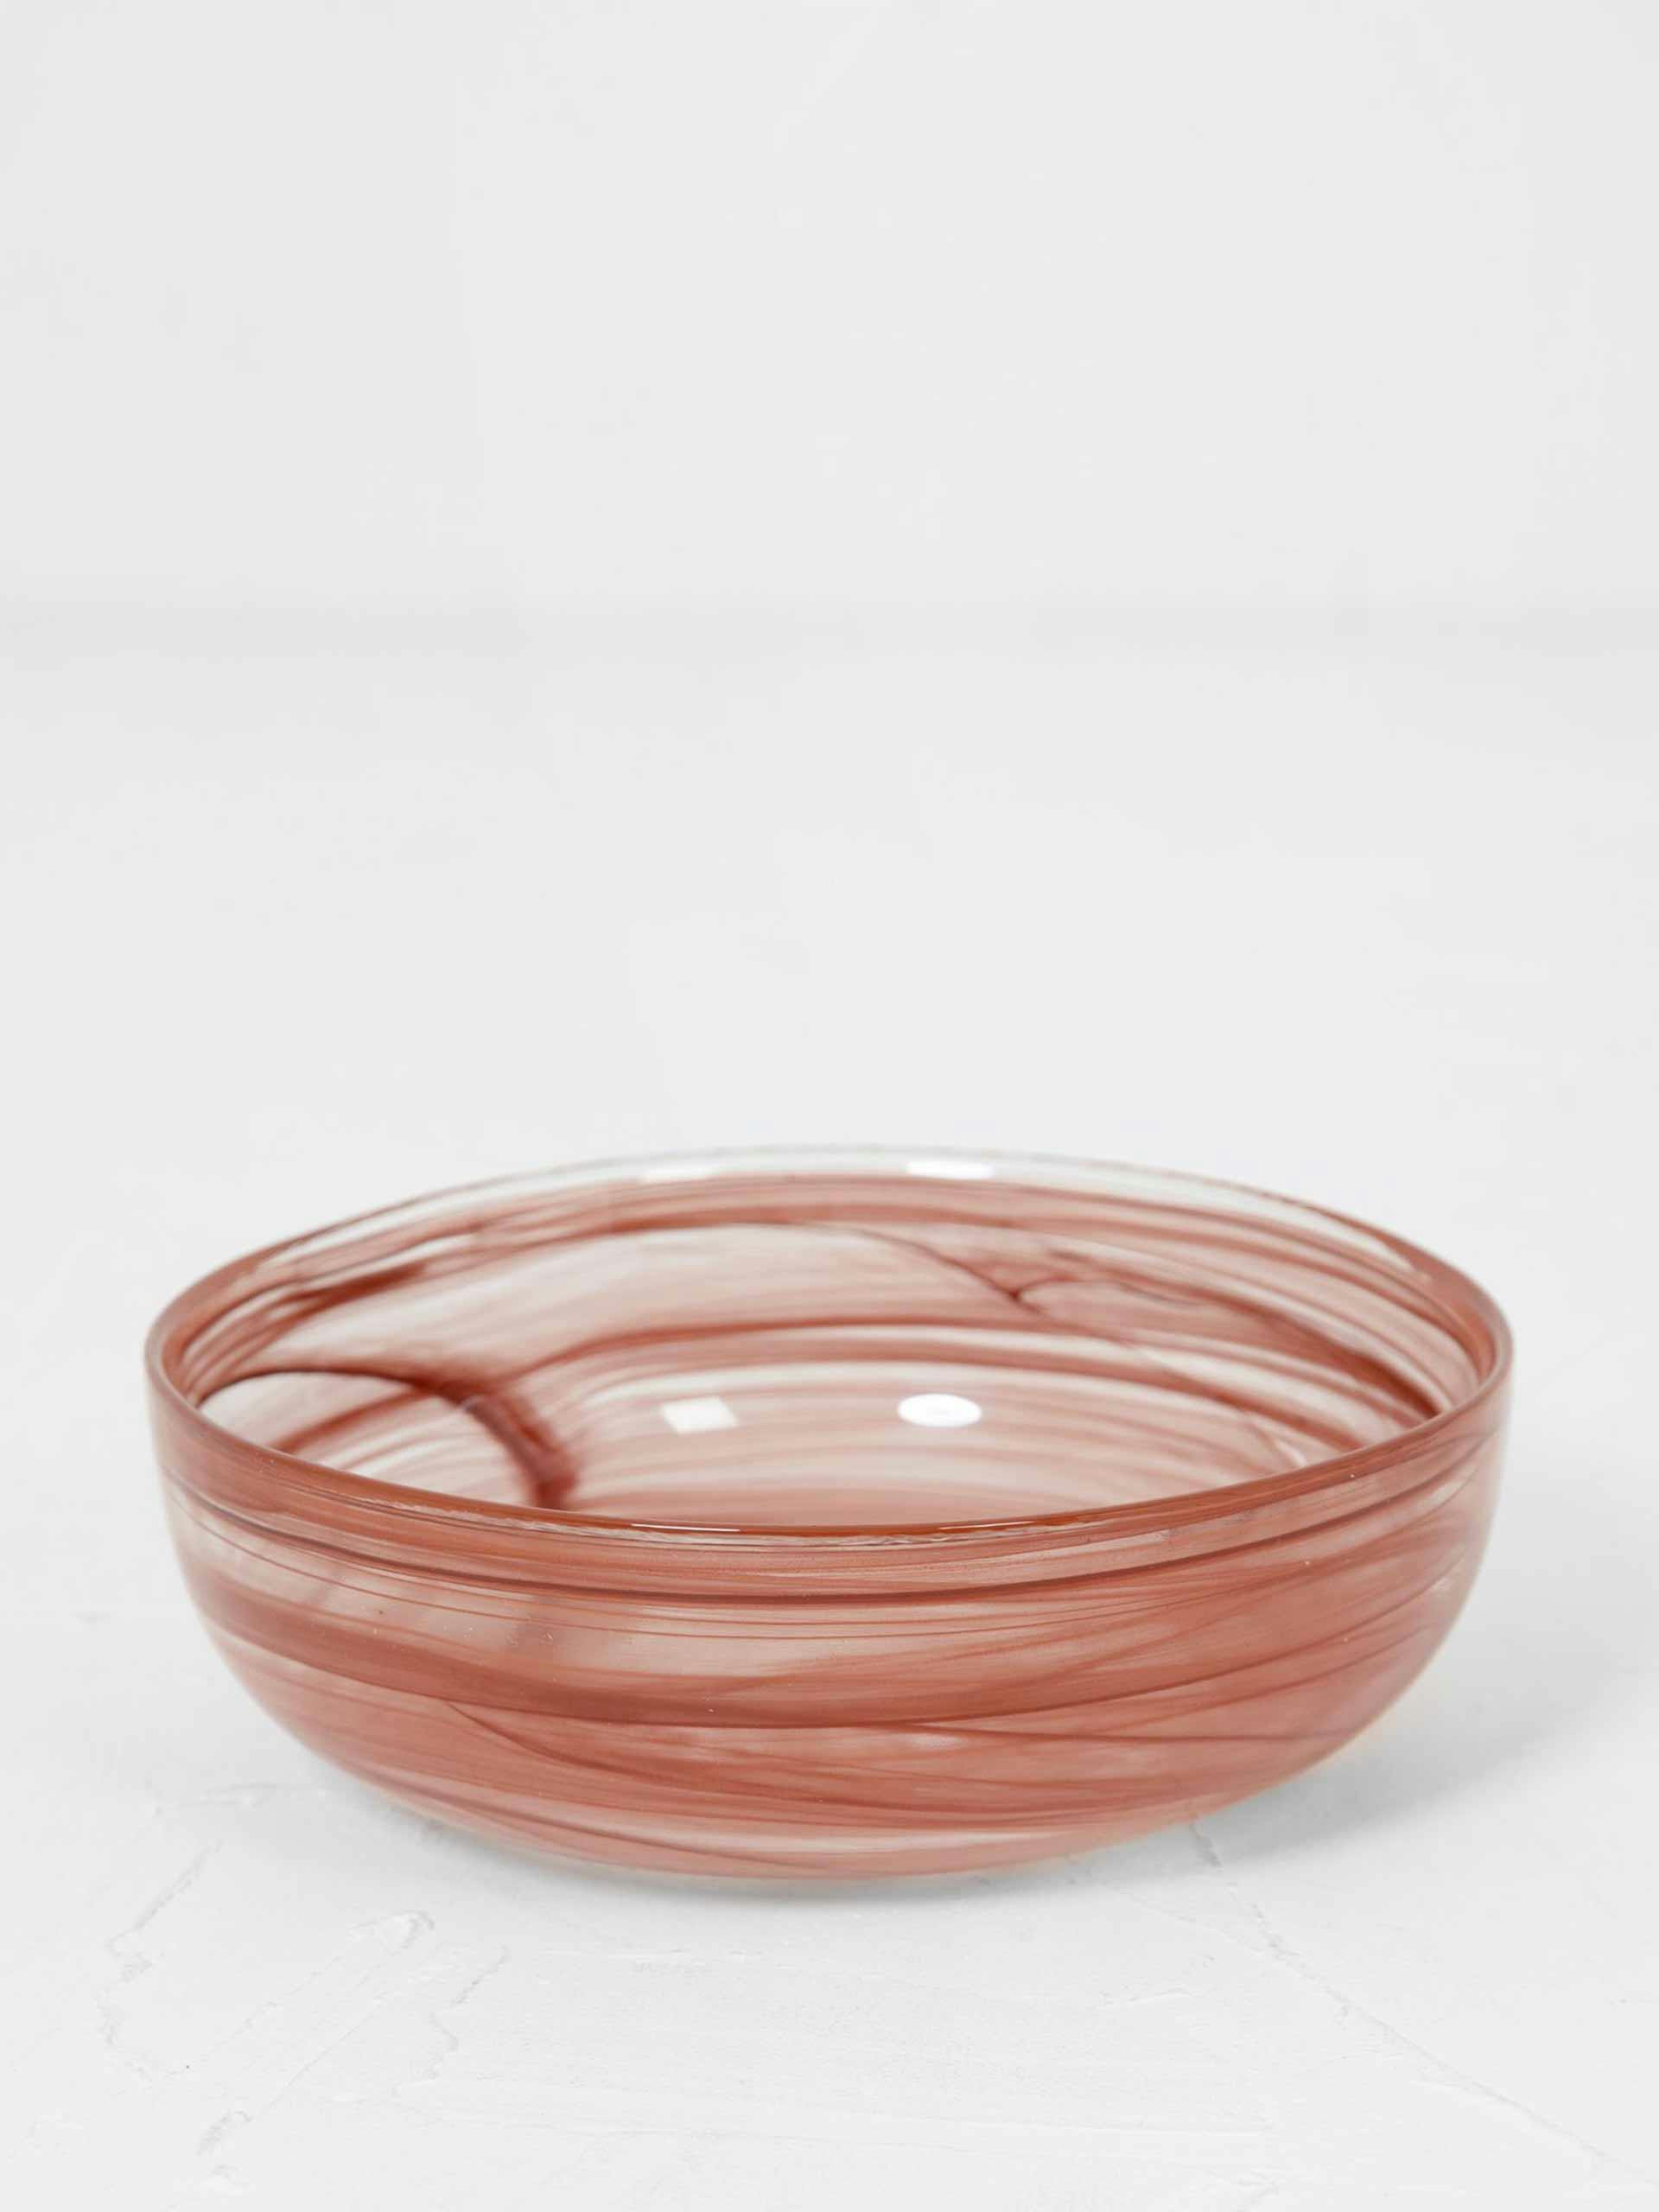 Diffuse bowl